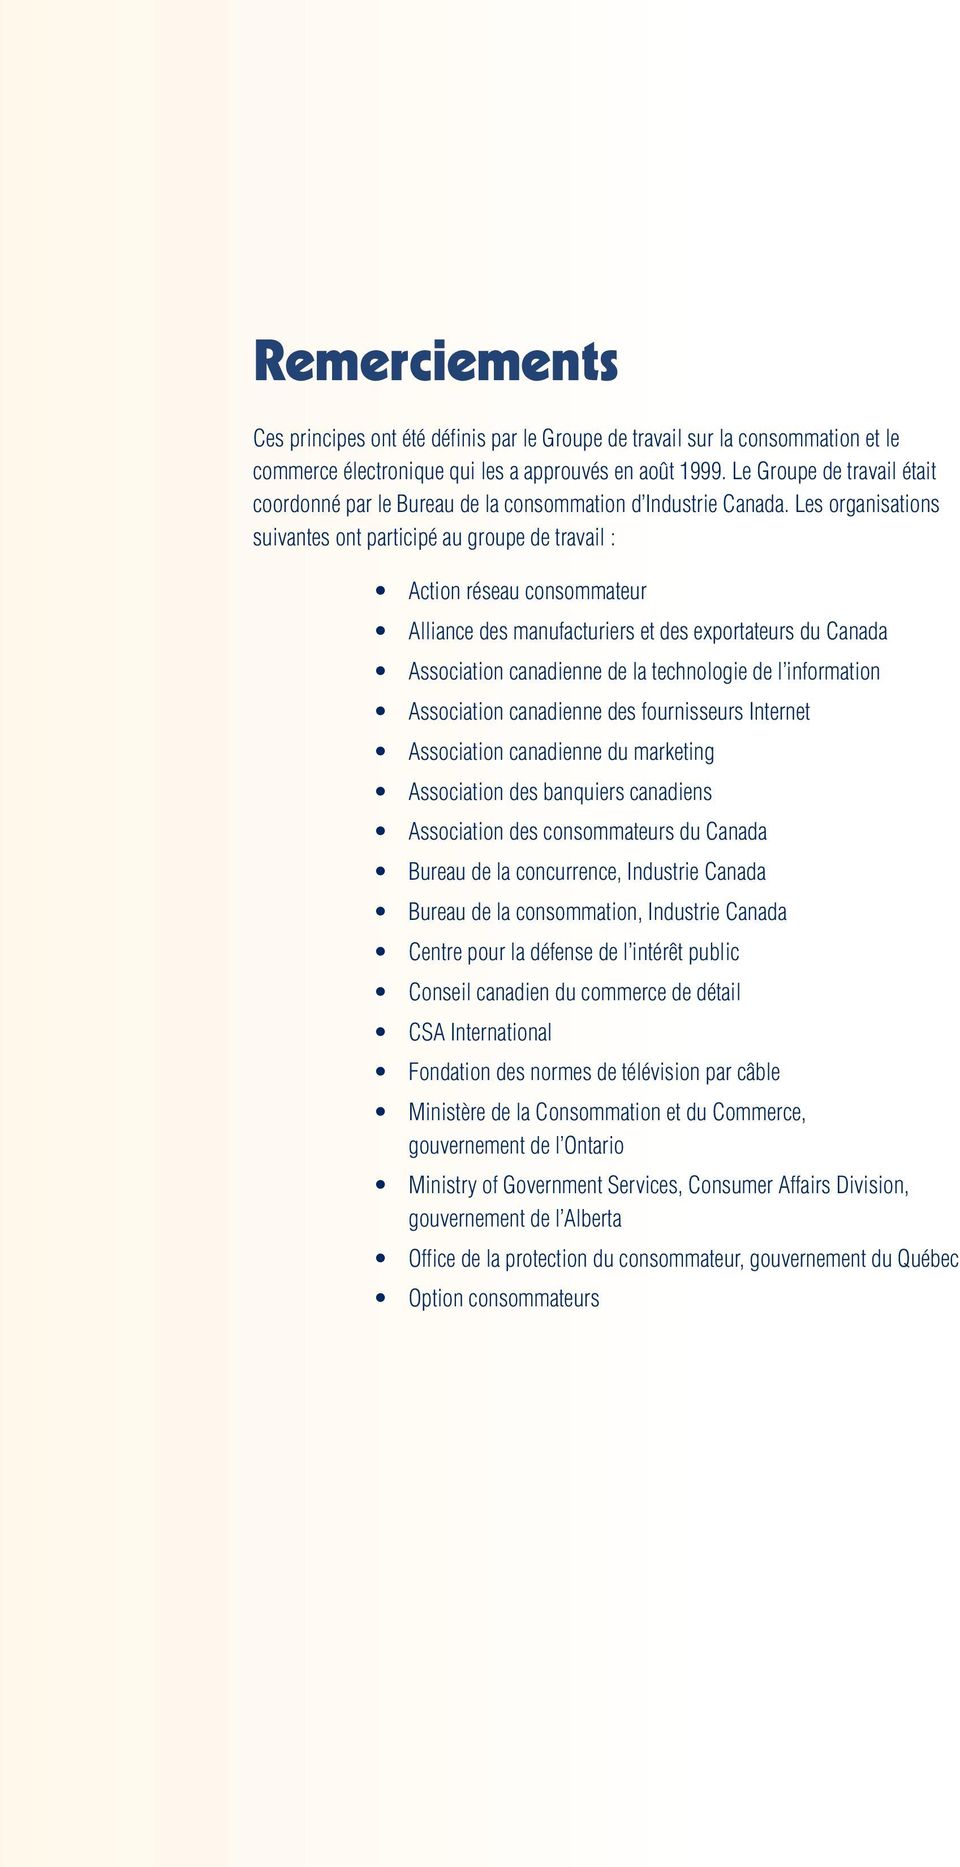 Les organisations suivantes ont participé au groupe de travail : Action réseau consommateur Alliance des manufacturiers et des exportateurs du Canada Association canadienne de la technologie de l